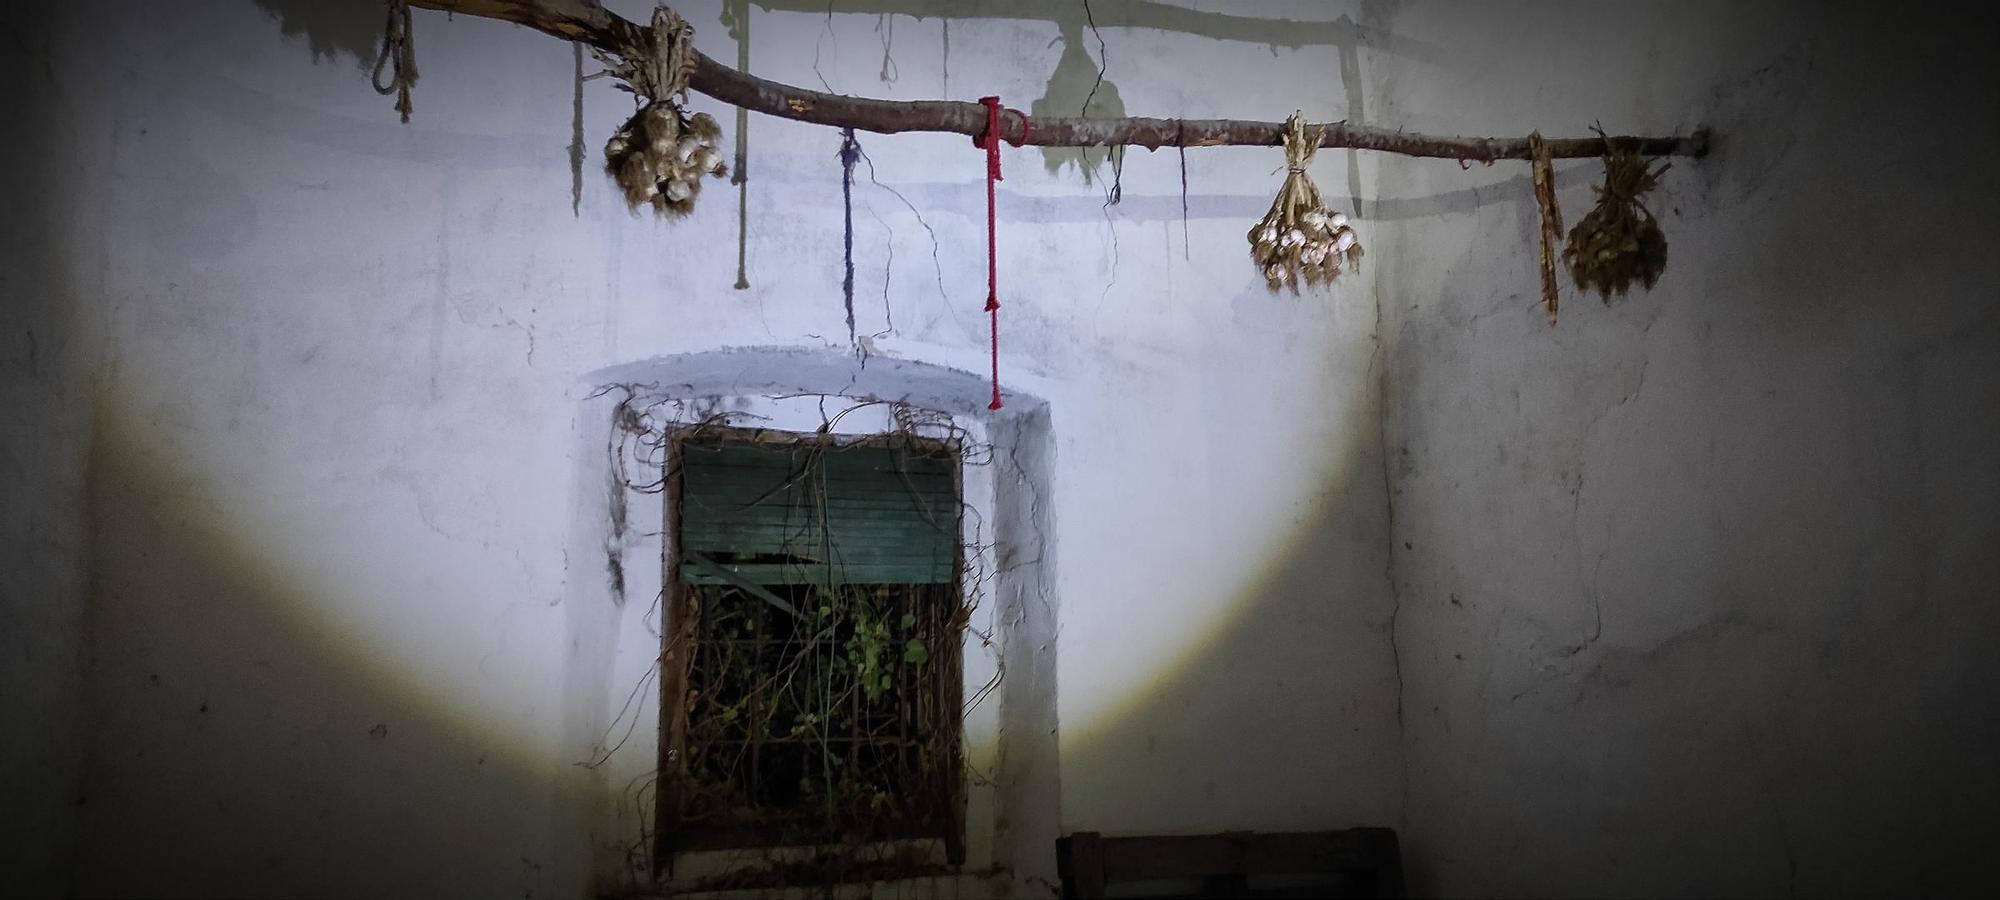 Fotos: Visita a una casa amb dimonis a prop de Llers